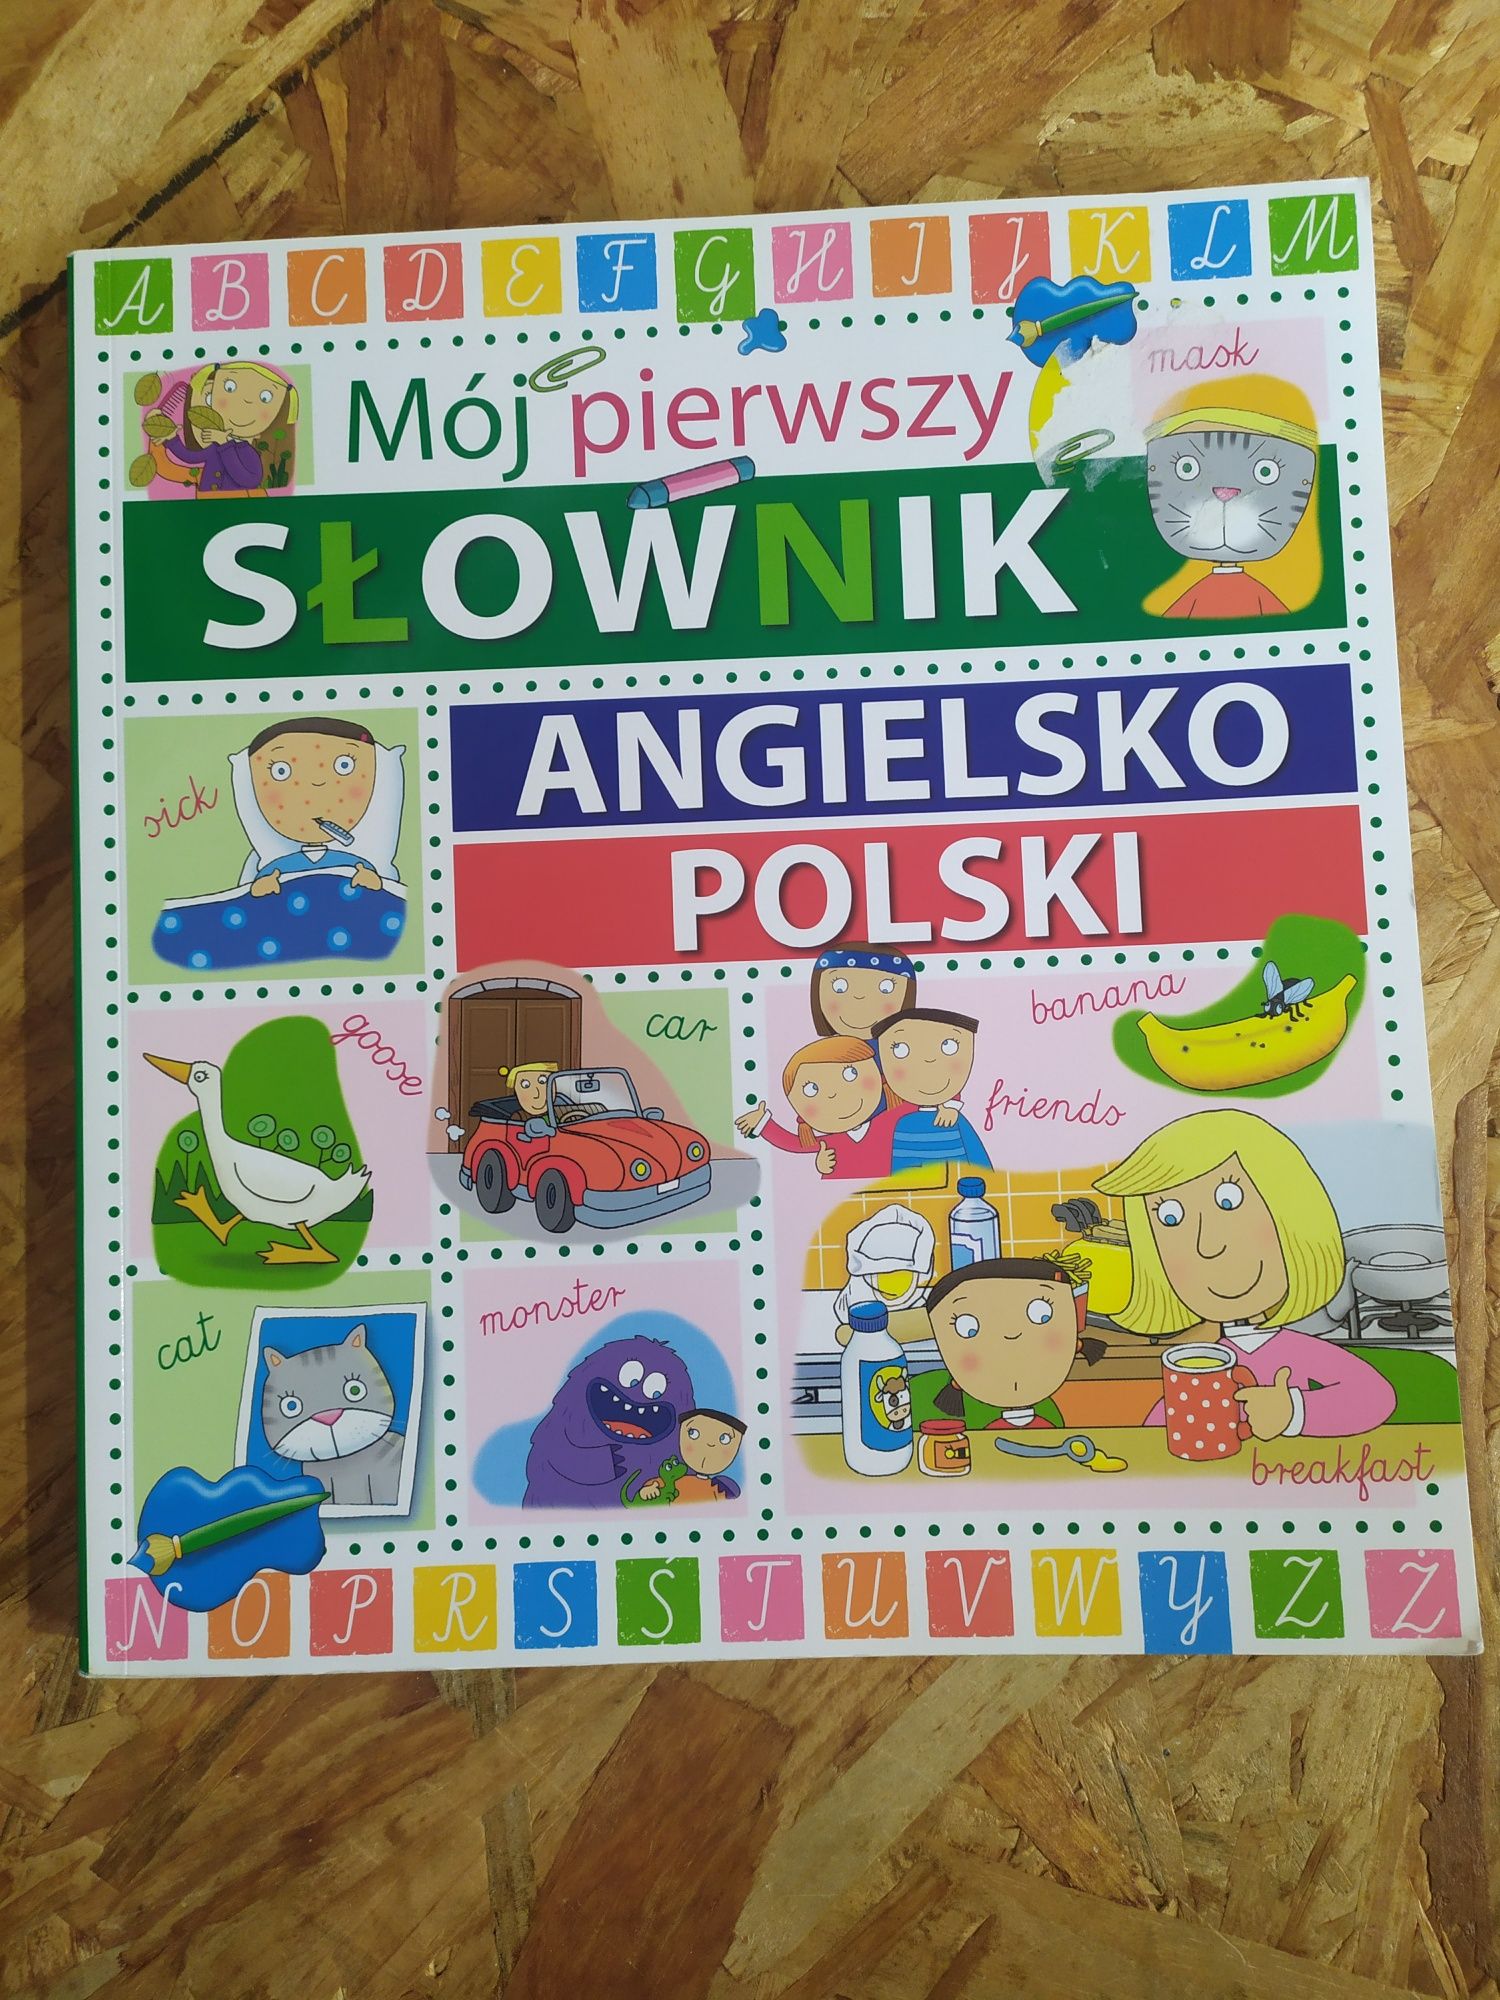 Mój pierwszy słownik angielsko-polski ilustrowany dla dzieci